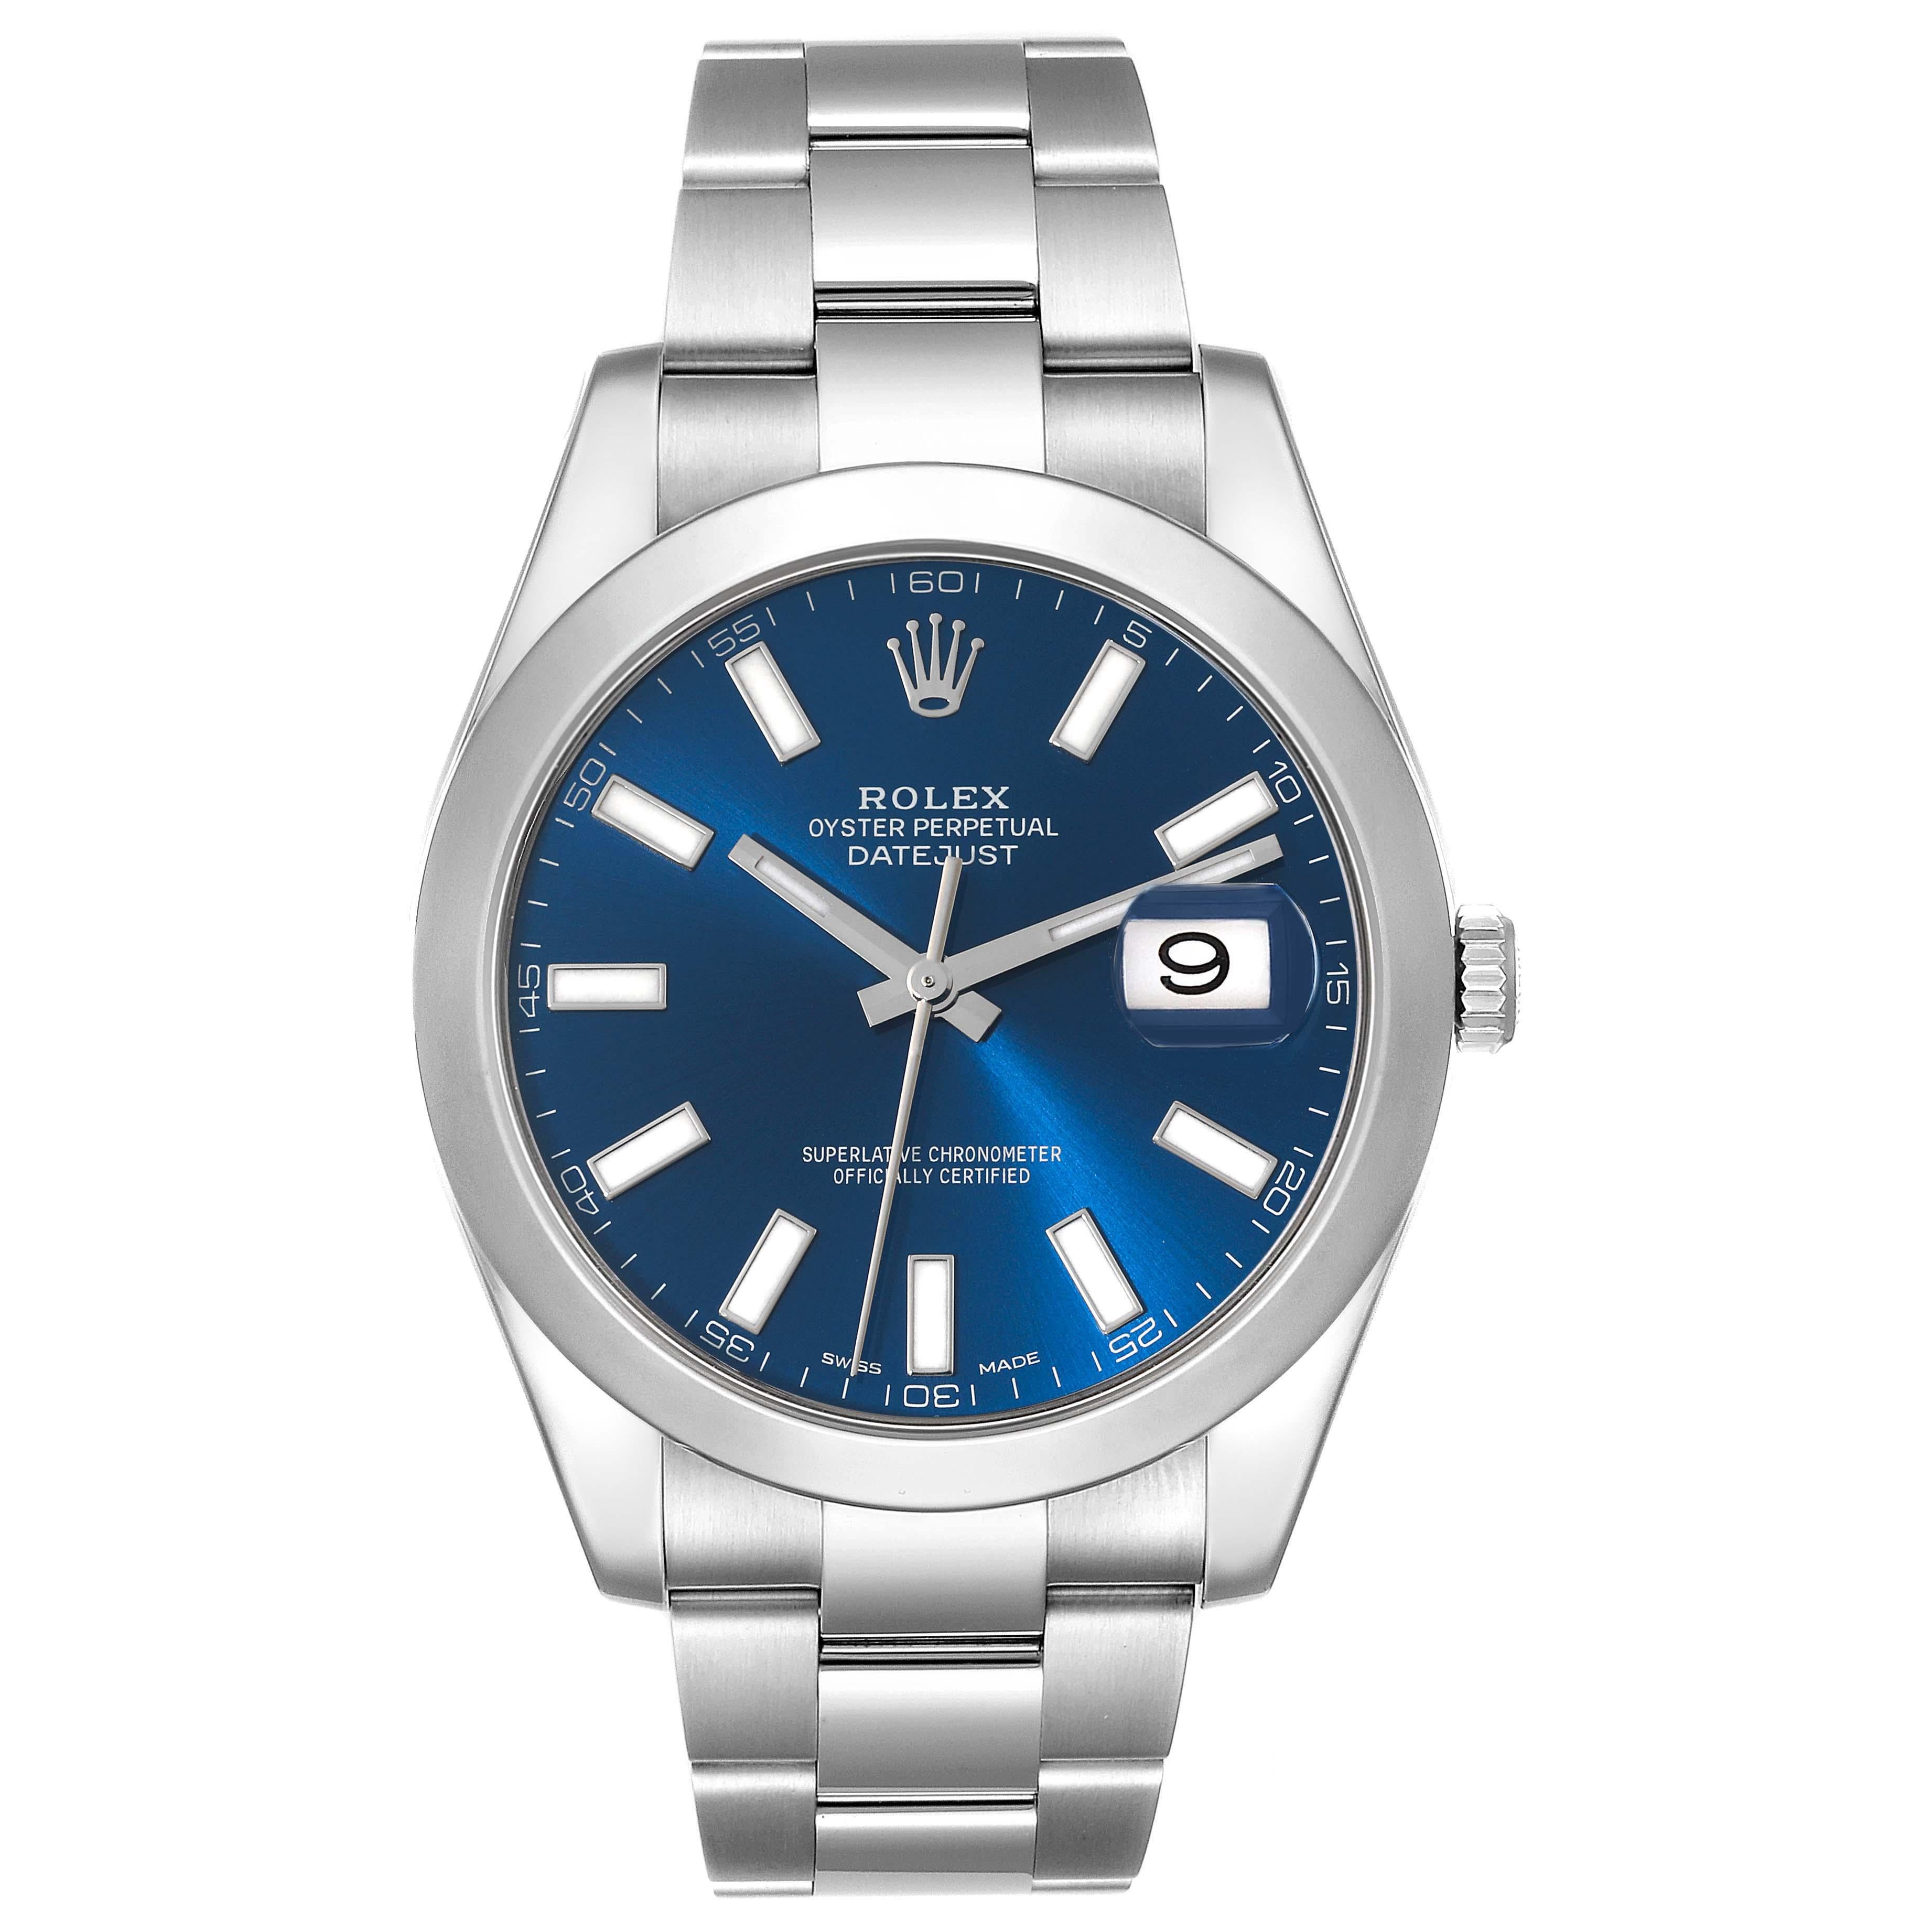 Rolex Datejust II 41 Blue Baton Dial Oyster Bracelet Steel Mens Watch 116300. Mouvement automatique à remontage automatique, officiellement certifié chronomètre. Boîtier en acier inoxydable de 41 mm de diamètre. Logo Rolex sur la couronne. Lunette